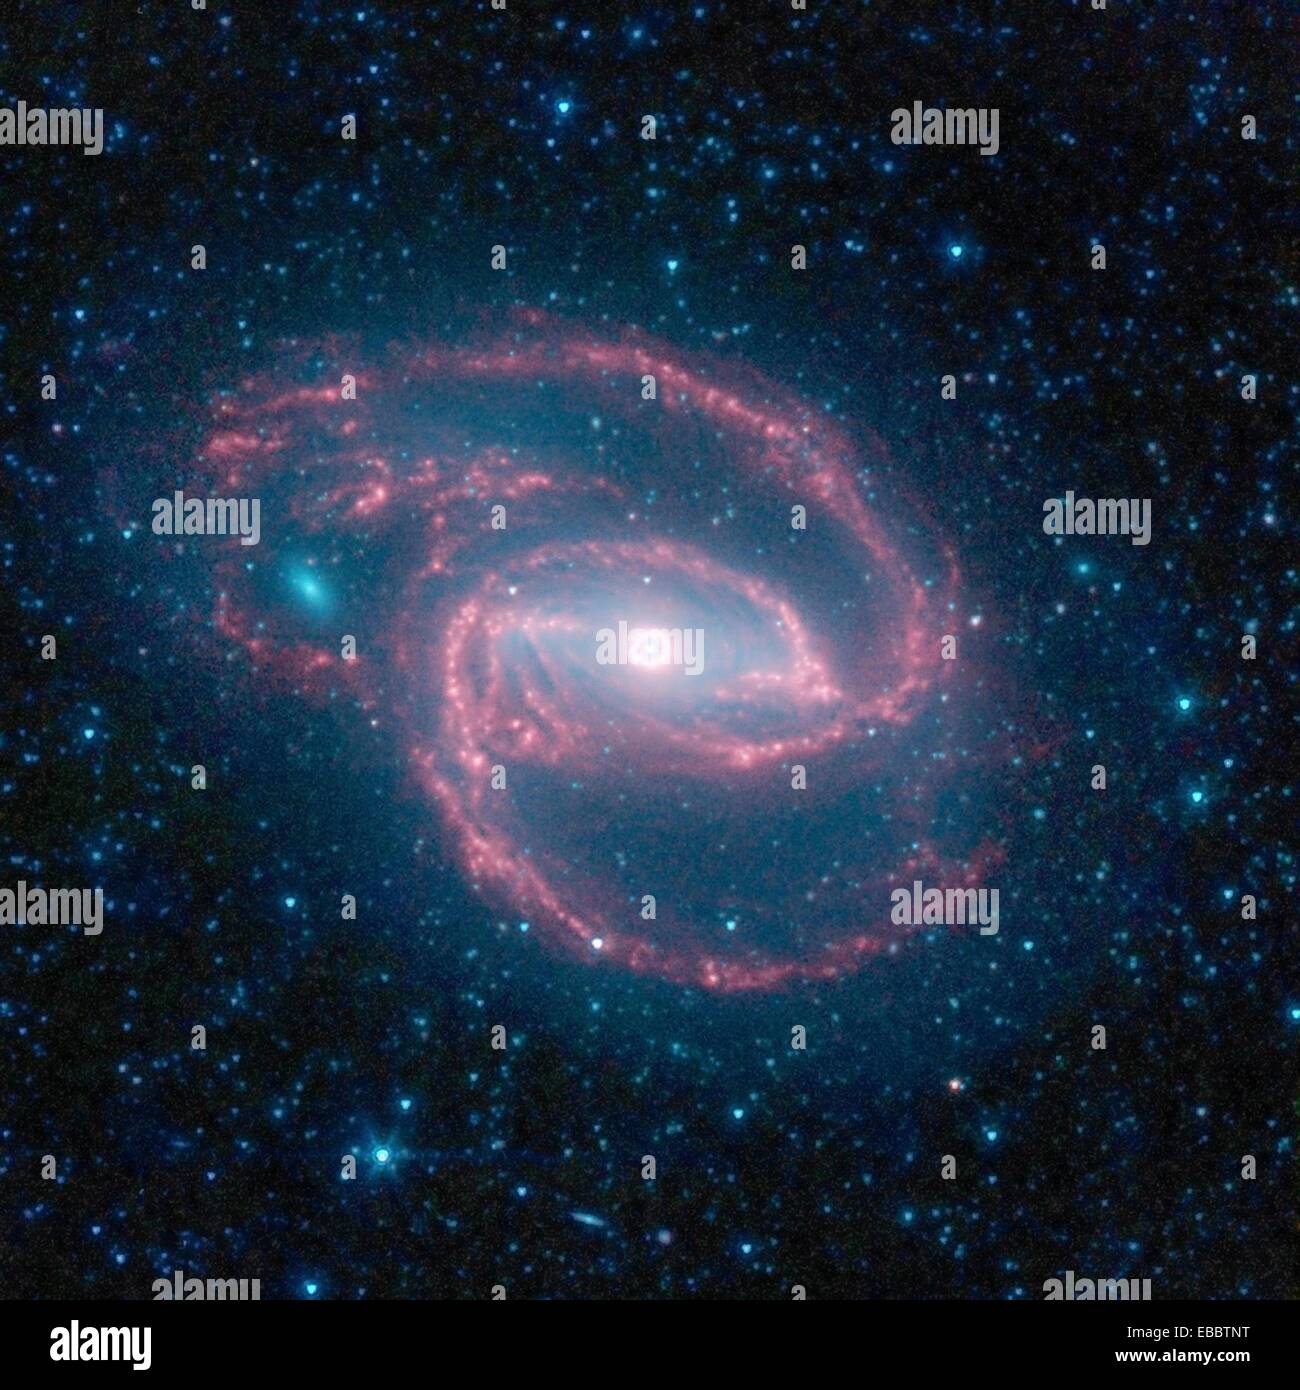 Una creatura a spirale NASA il telescopio spaziale Spitzer ha immaginato una creatura selvatica del buio -- una galassia a spirale con un occhio-simili Foto Stock